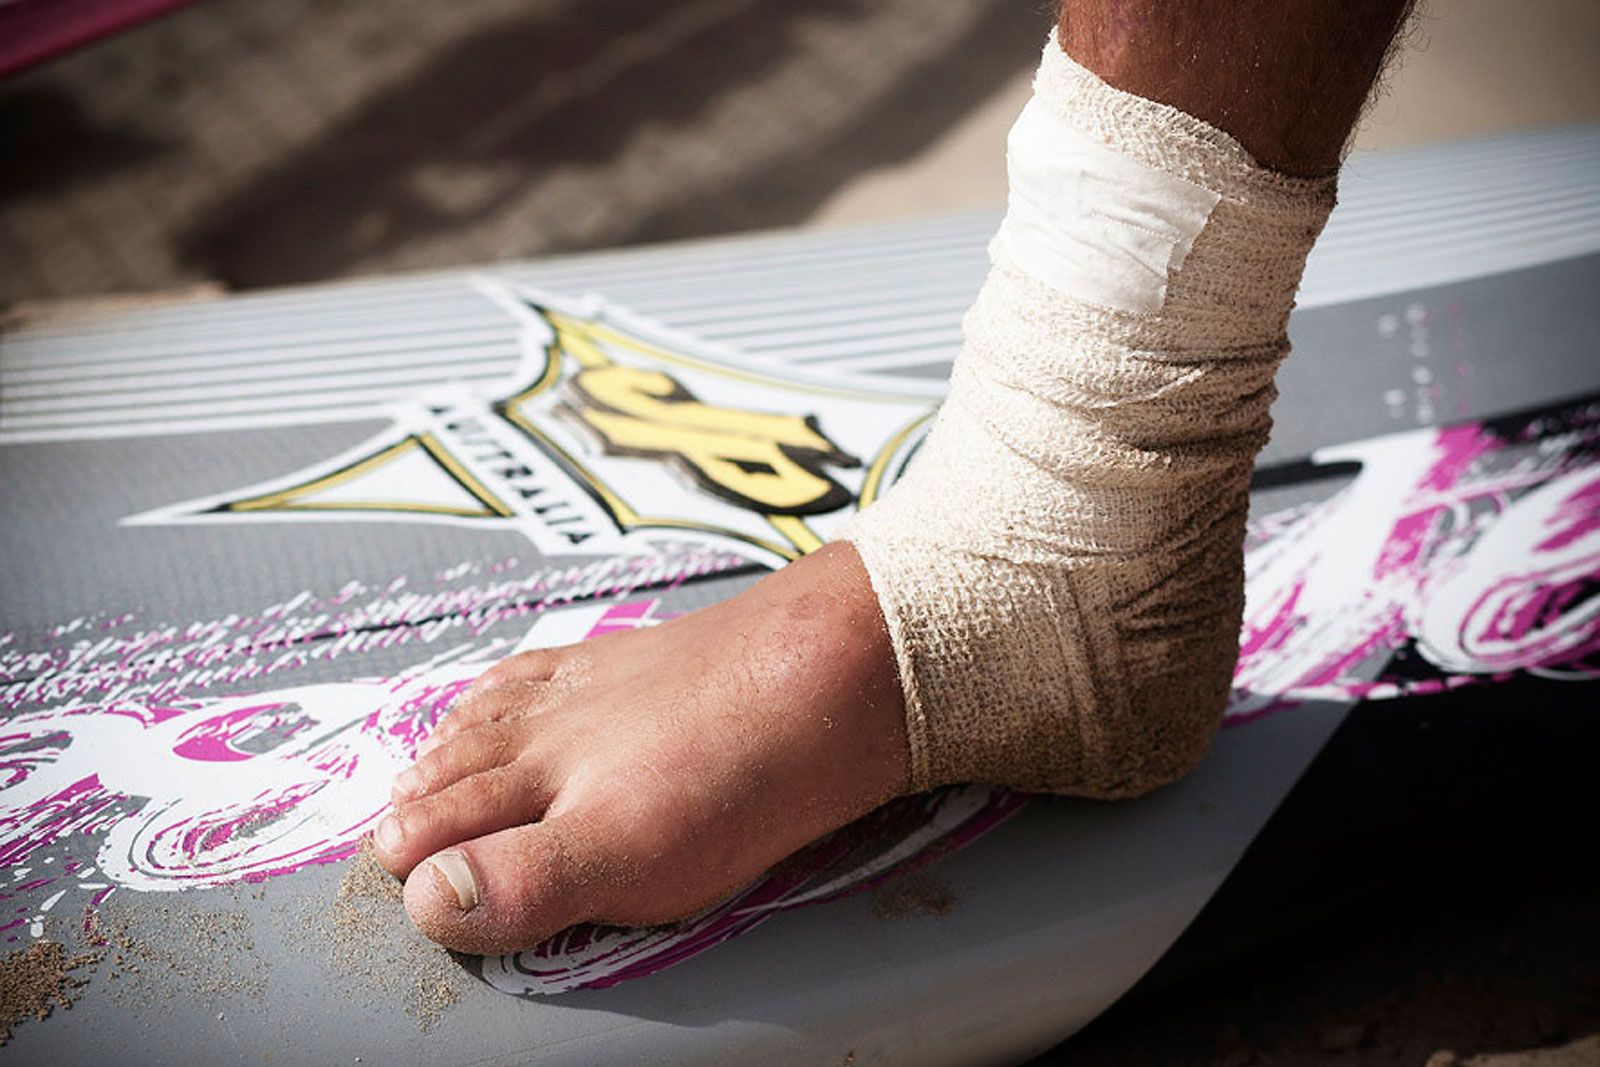 Surfmedizin e.V.: Spezialisten für Verletzungen beim Surfen 